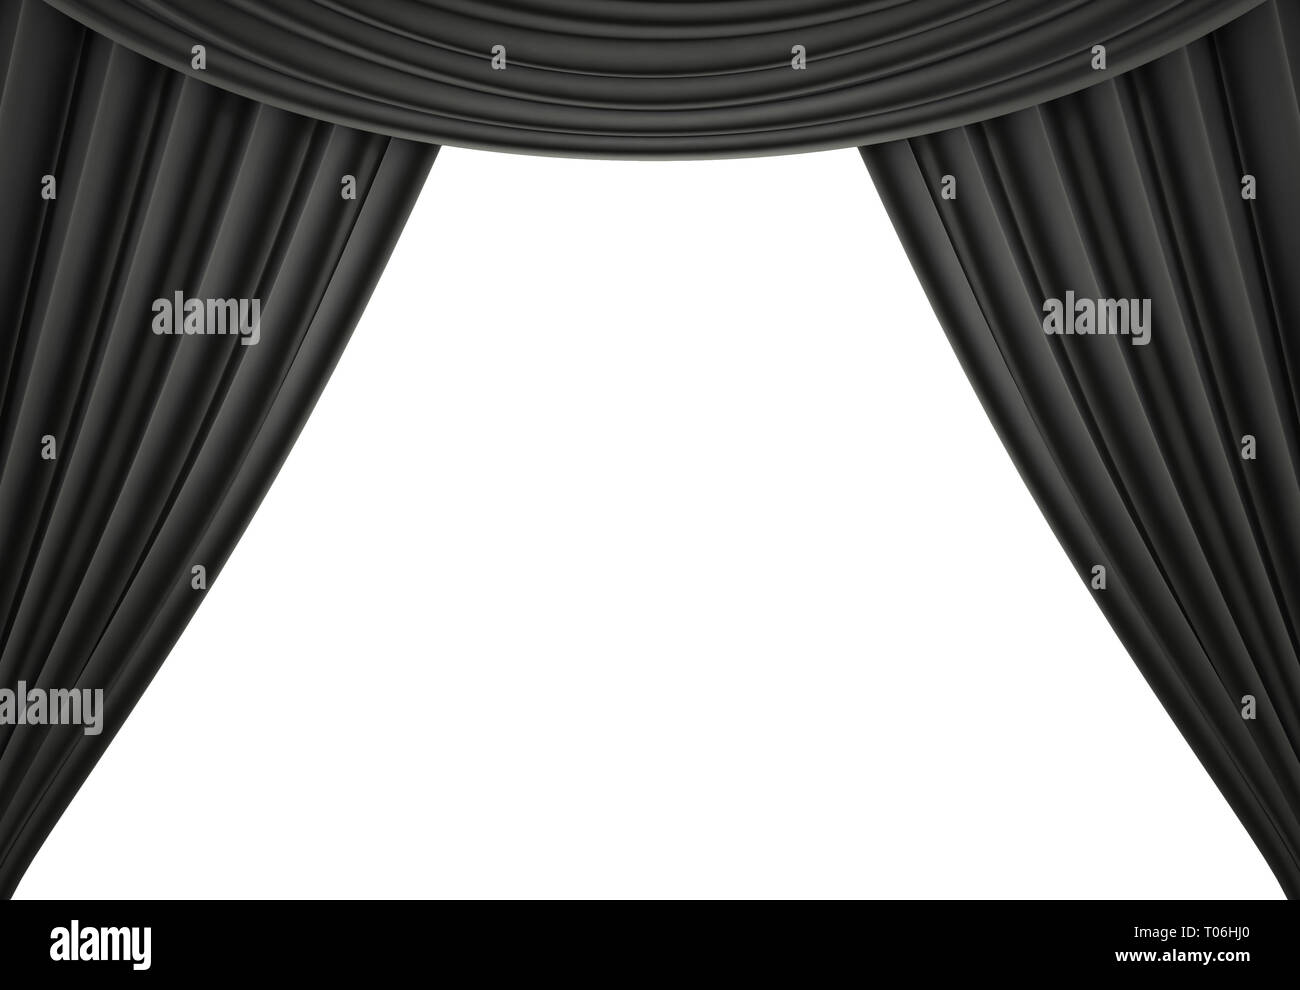 Tenda nera di un teatro classico isolato su sfondo bianco. 3D